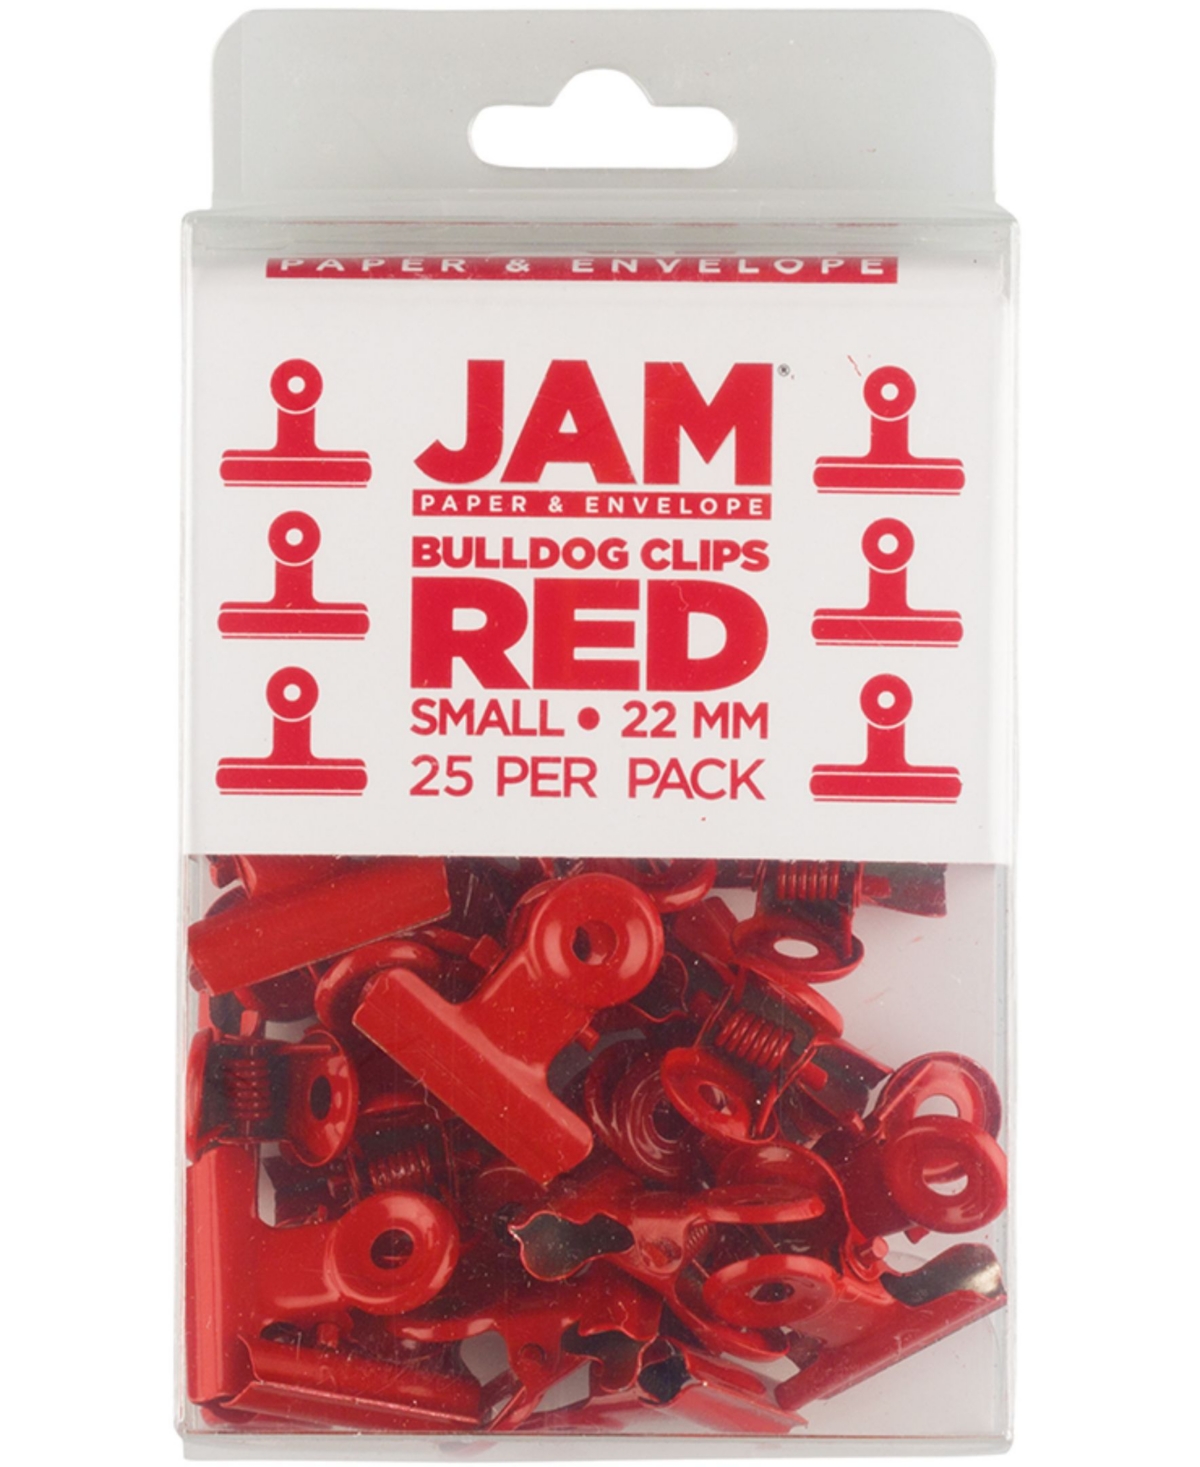 Jam Paper Metal Bulldog Clips In Red